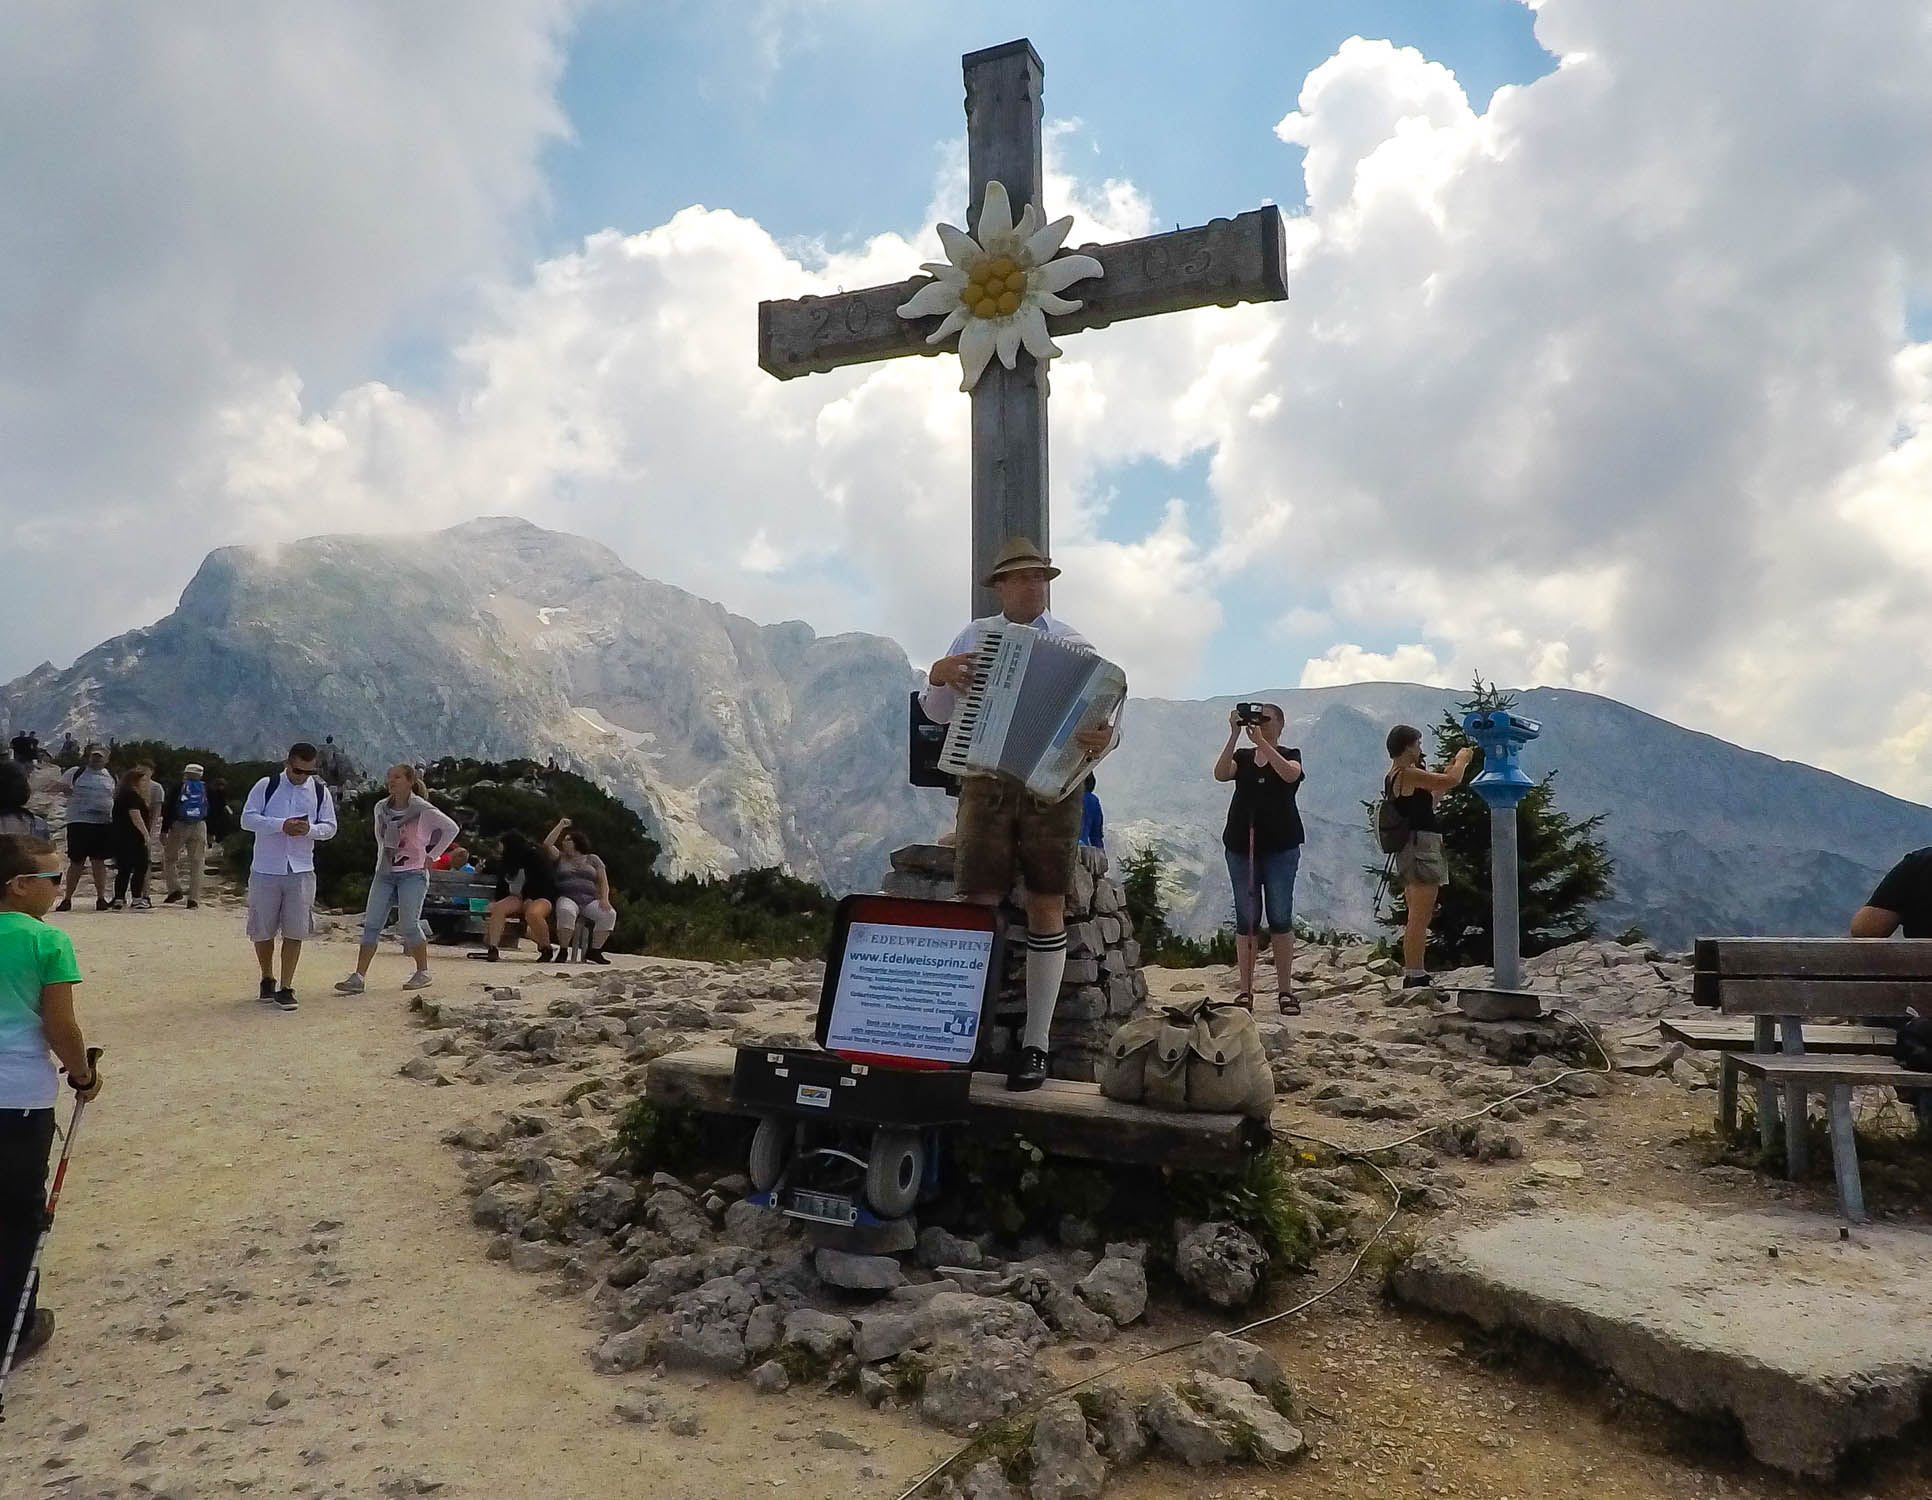 Ponad Kehlstein vedie horský turistický chodík s peknými vyhliadkami. Môžnosť na krátku turistiku.